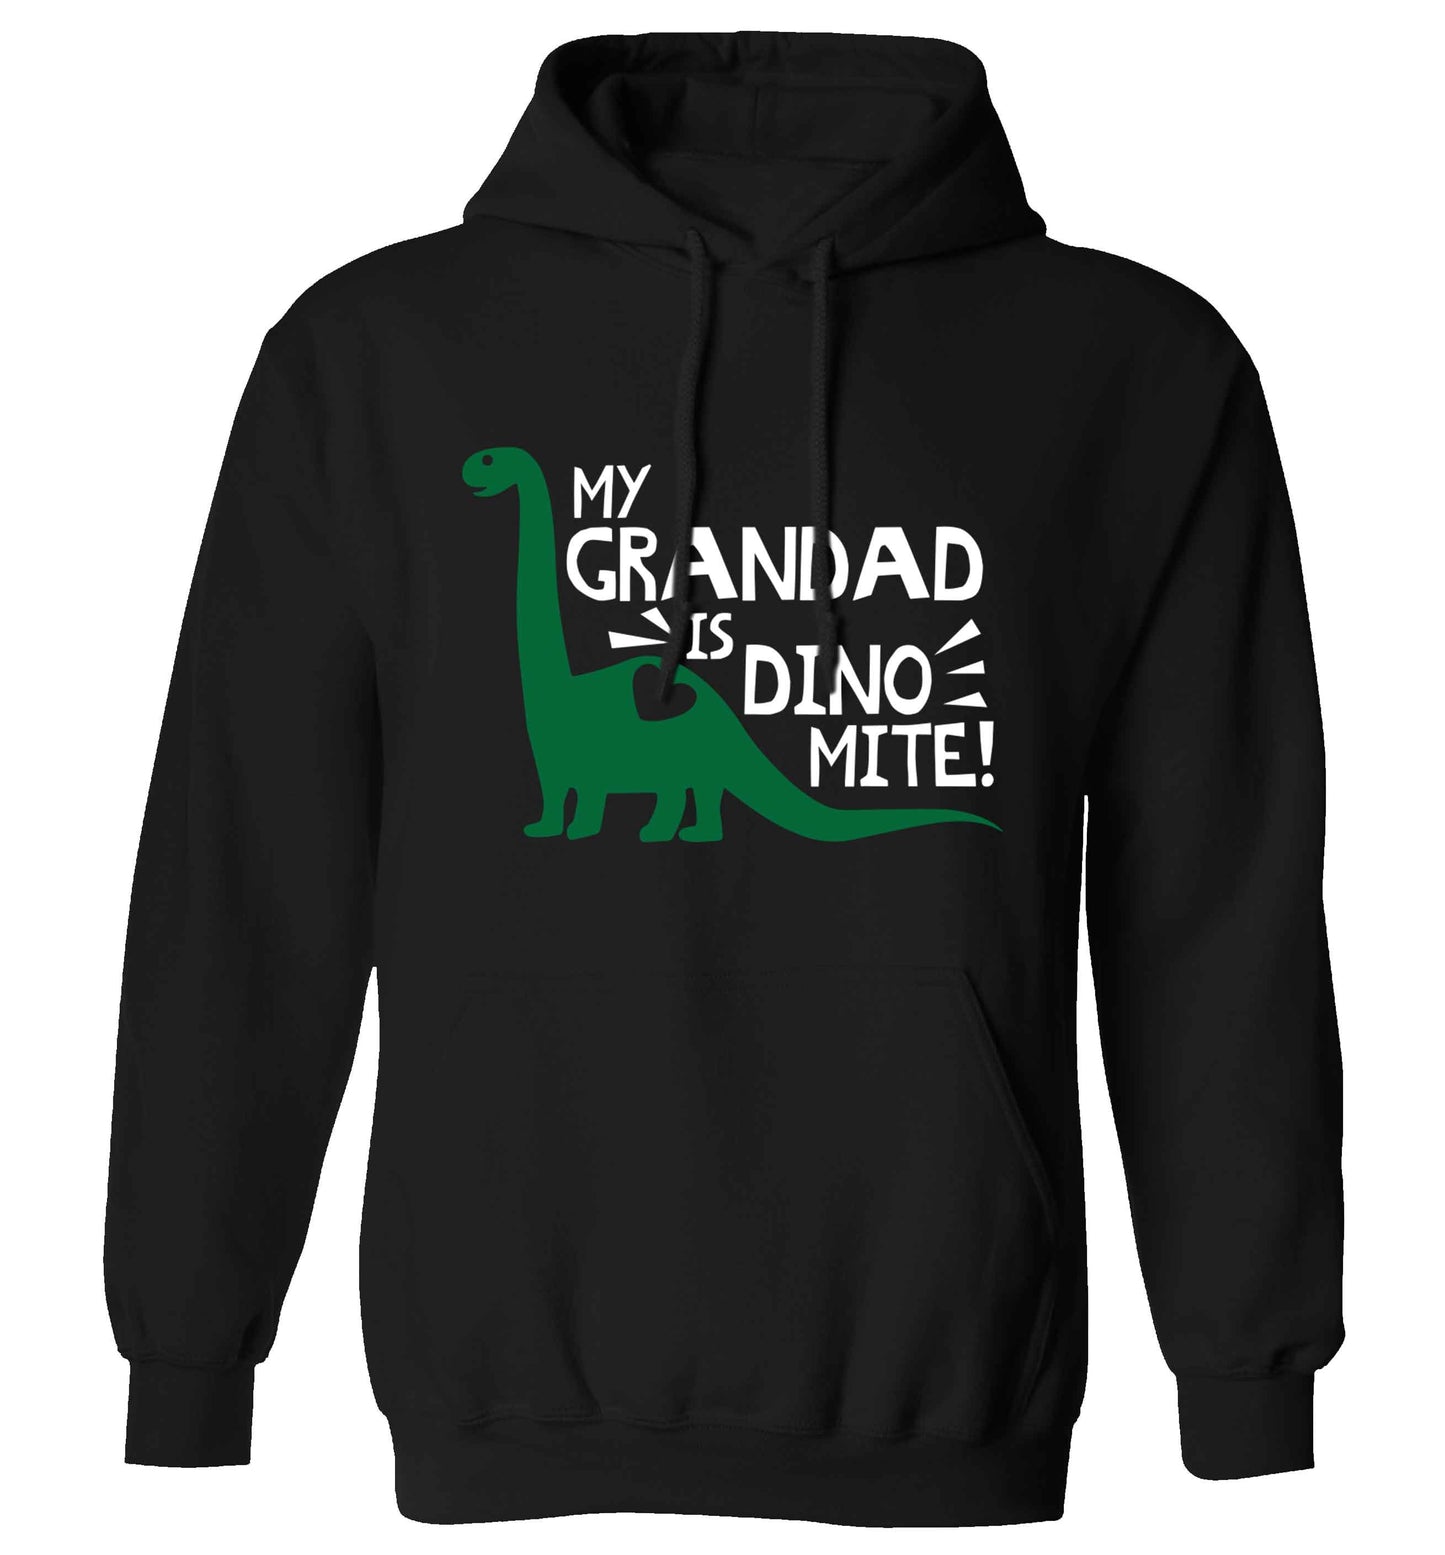 My grandad is dinomite! adults unisex black hoodie 2XL